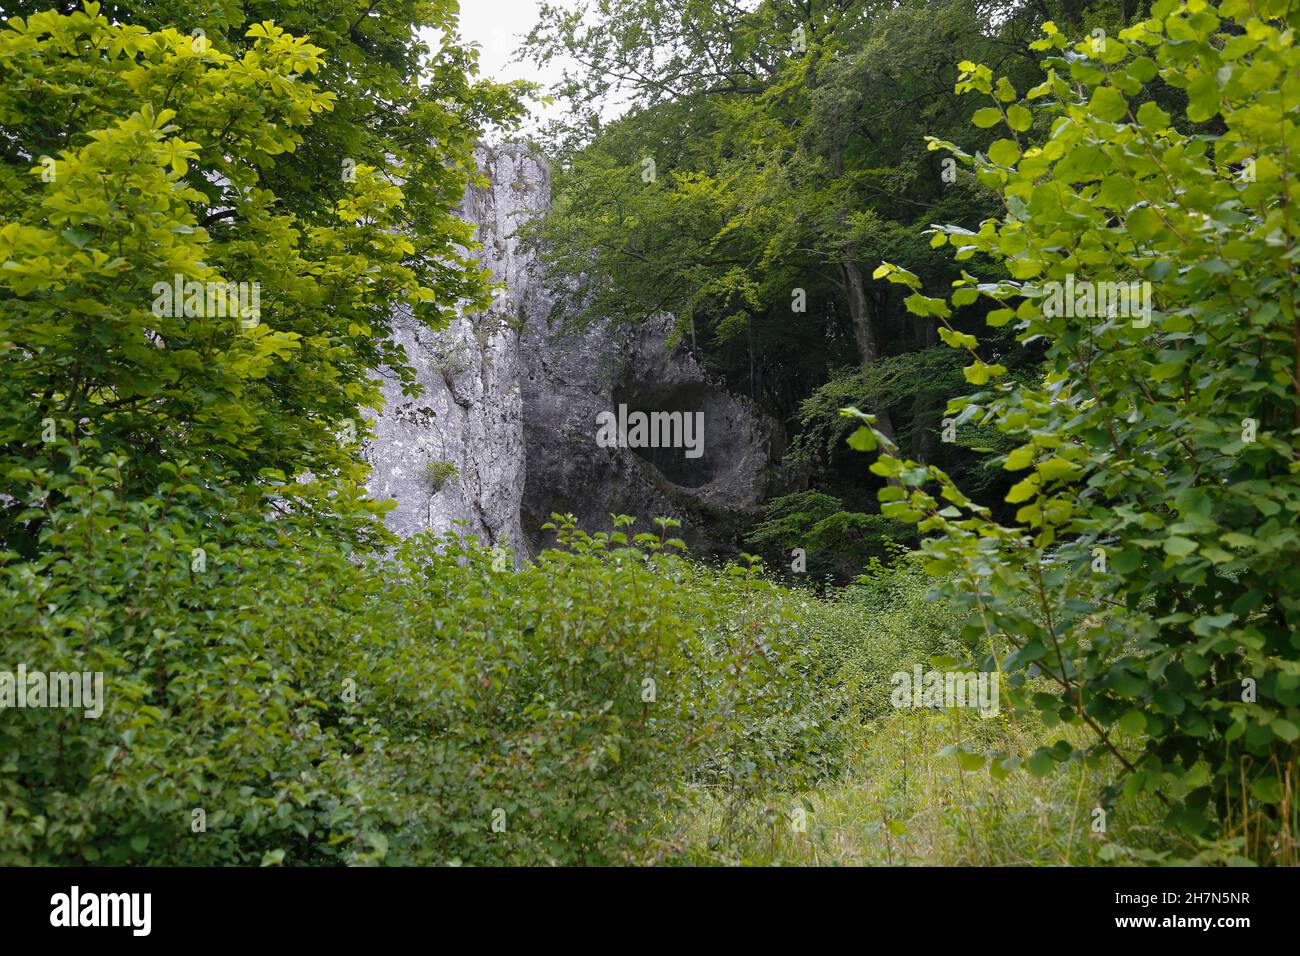 Hohle Fels, géotope troglodytique dans l'Alb souabe, parc mondial de l'UNESCO, Schelklingen, Bade-Wurtemberg, Allemagne Banque D'Images